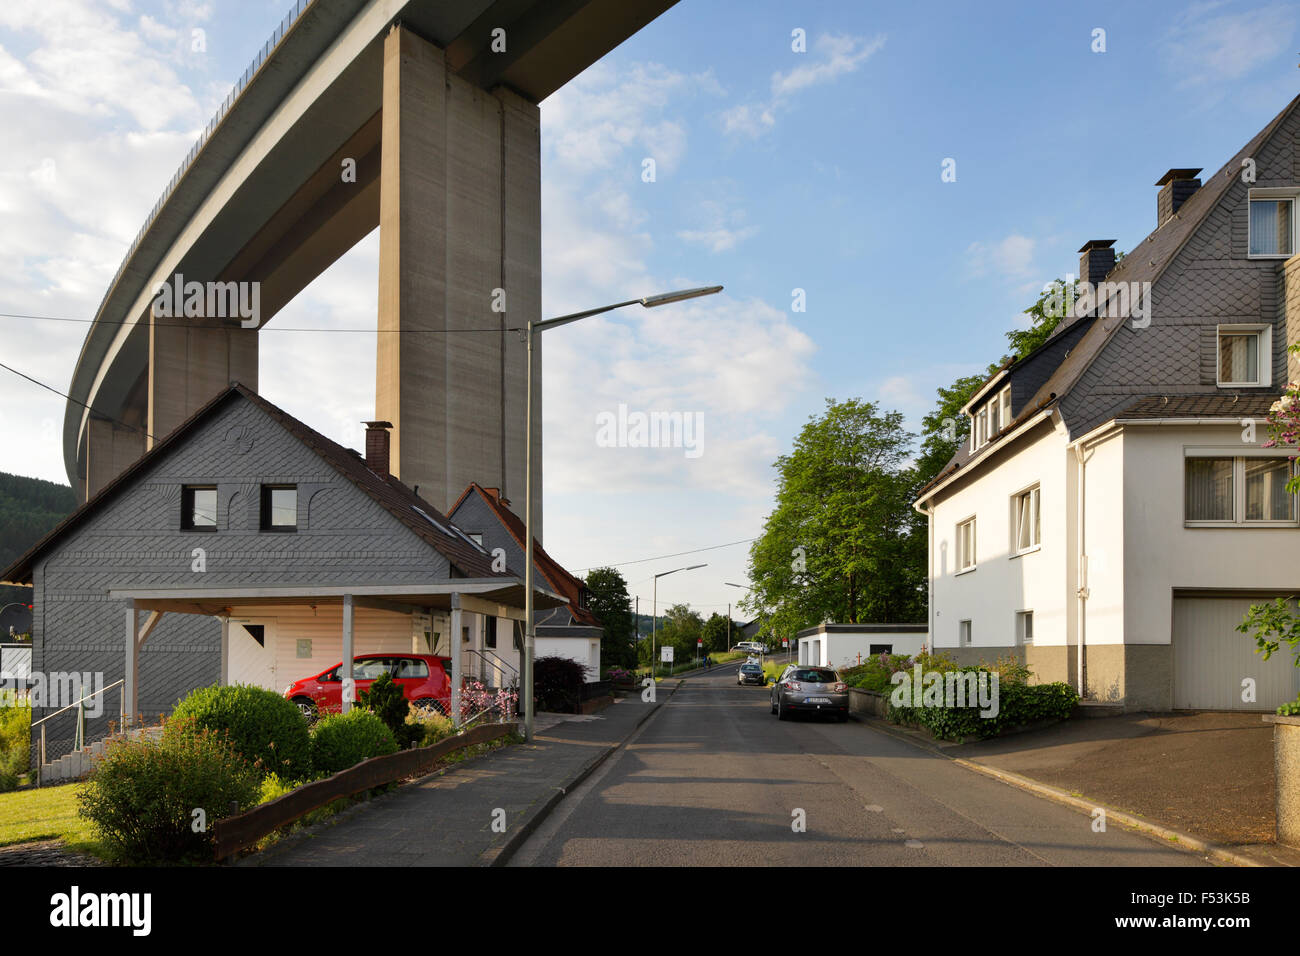 27.05.2015, Siegen, Rhénanie du Nord-Westphalie, Allemagne - rue résidentielle avec Einfamlienhaeusern Siegtalbruecke et l'A45 dans la région de Siegen. 00P150527D129CAROEX.JPG - pas à vendre dans la région de G E R M A N Y, A U S T R I A, S W I T Z E R L A N D [communiqué de modèle : NON APPLICABLE, DES BIENS : NON (c) agence photo caro / http://www.caro-images.pl, Info@carofoto.pl, Paris V René - En cas d'utilisation de la photo pour les non-fins journalistiques, veuillez contacter l'agence - l'image est l'objet d'image !] Banque D'Images